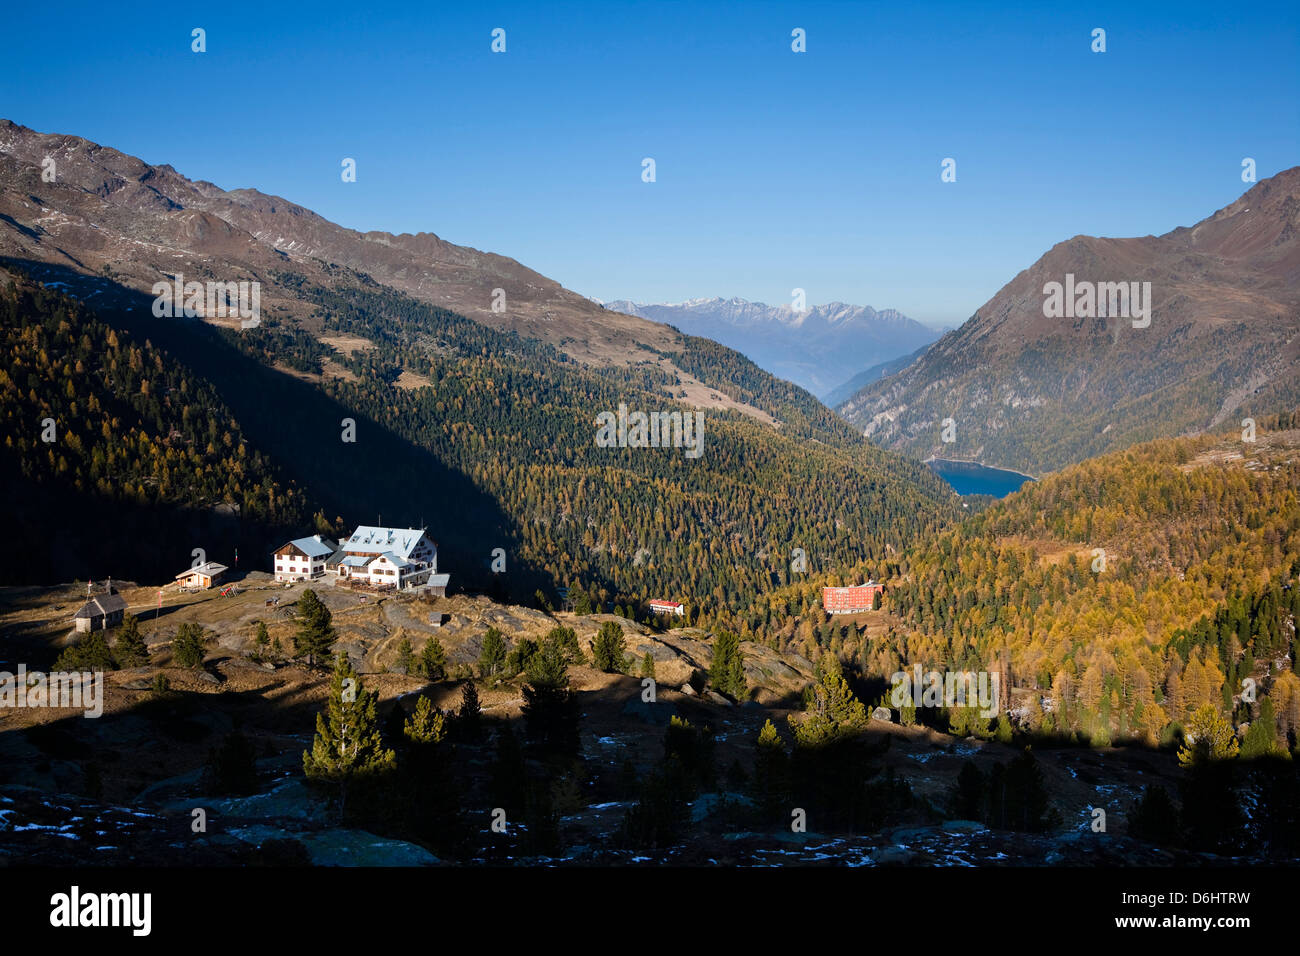 Das Tal mit See Zufrittsee in Südtirol Martelltal. Zufallheutte (ALM) im Vordergrund. Süd-Tirol, Italien. Stockfoto